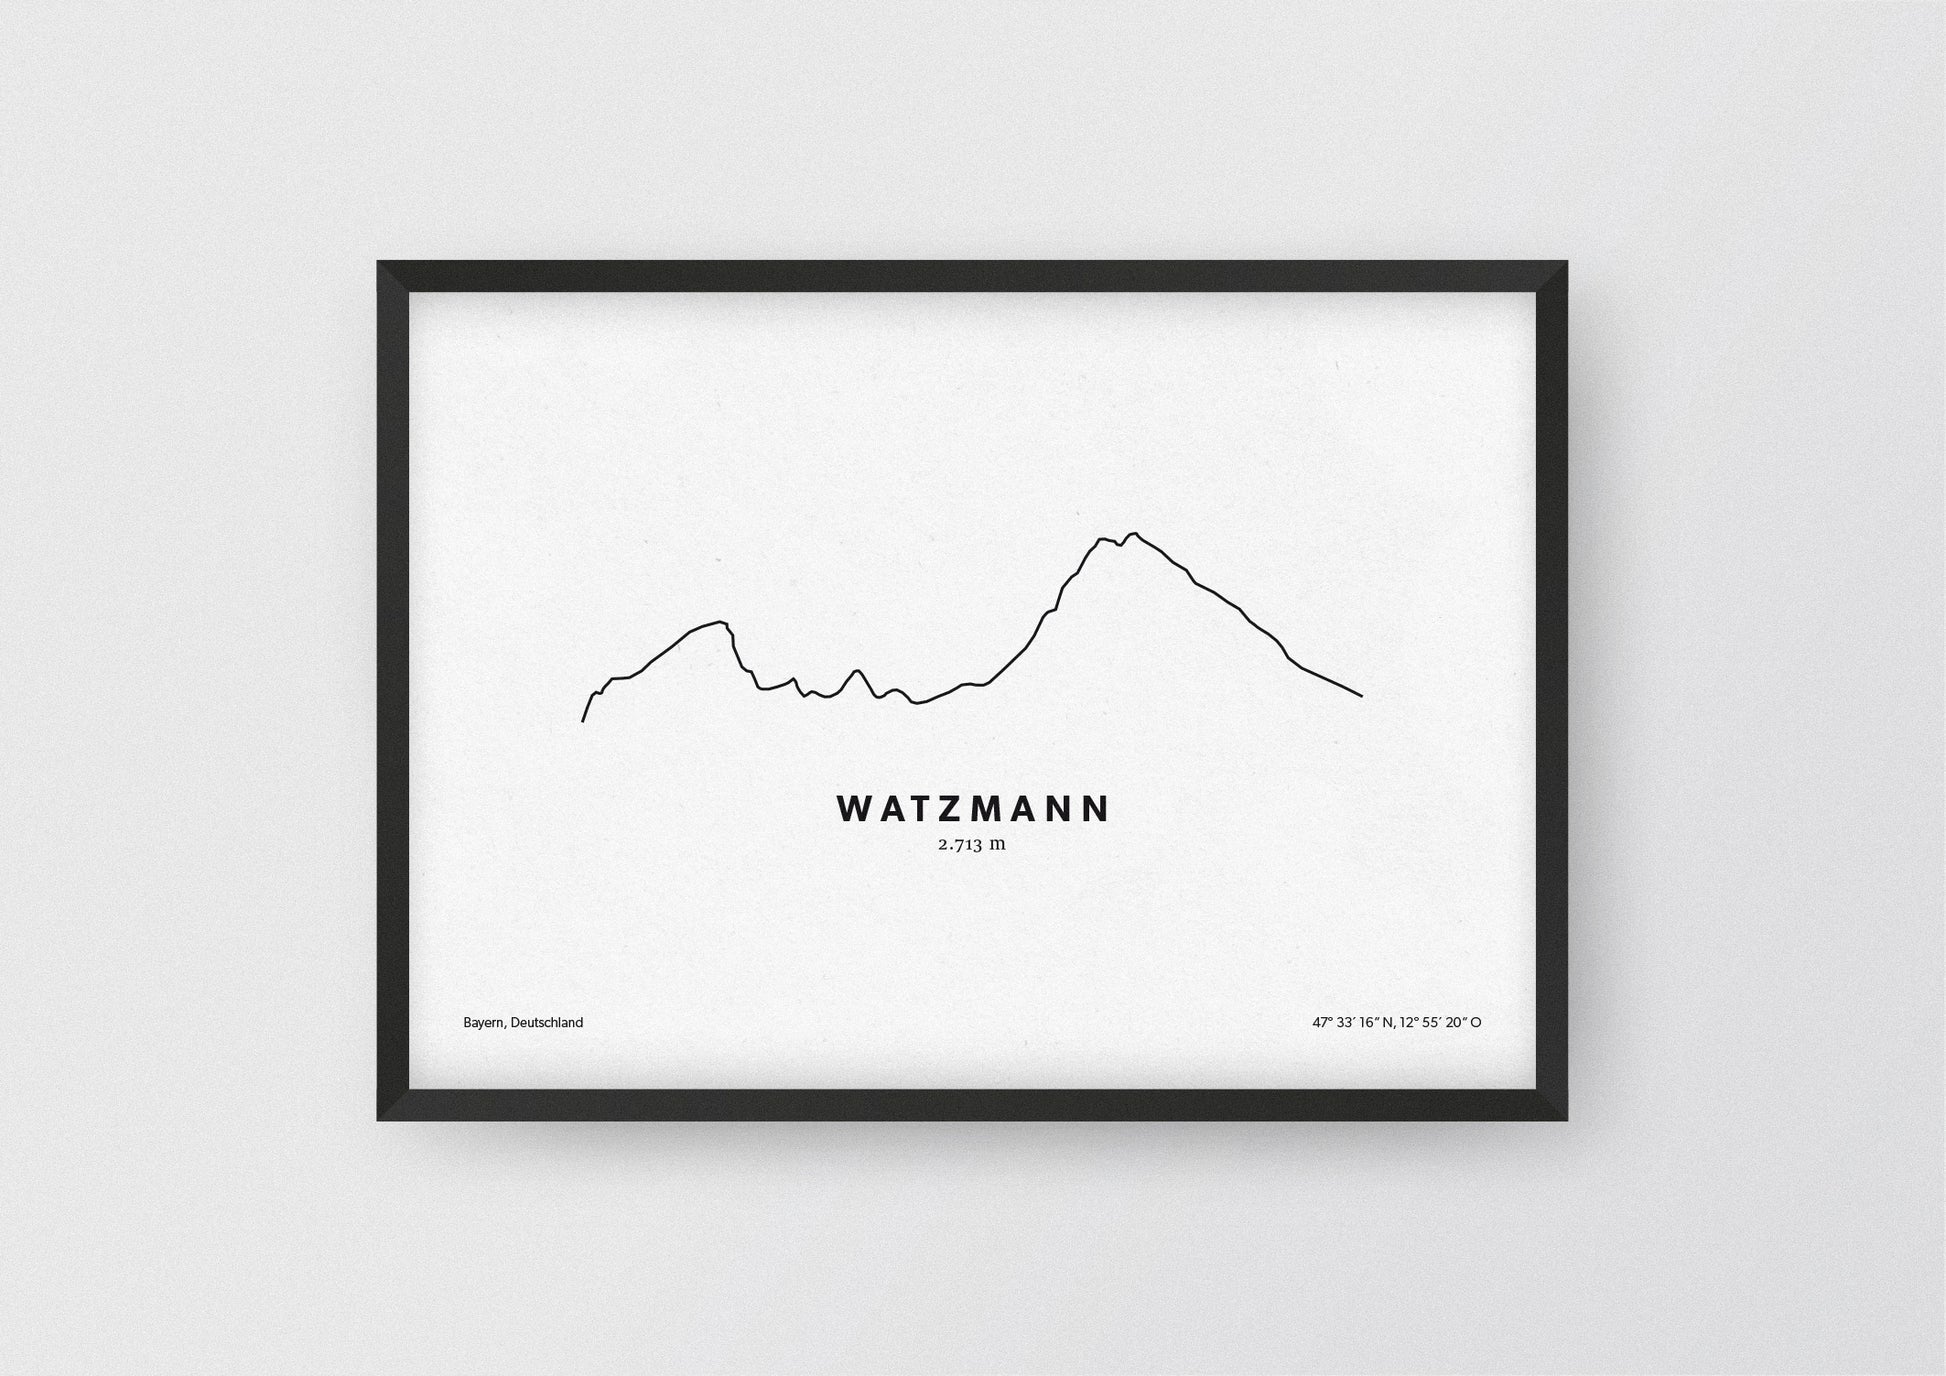 Minimalistische Illustration des Watzmann in den Berchtesgadener Alpen, als stilvoller Einrichtungsgegenstand für Zuhause.